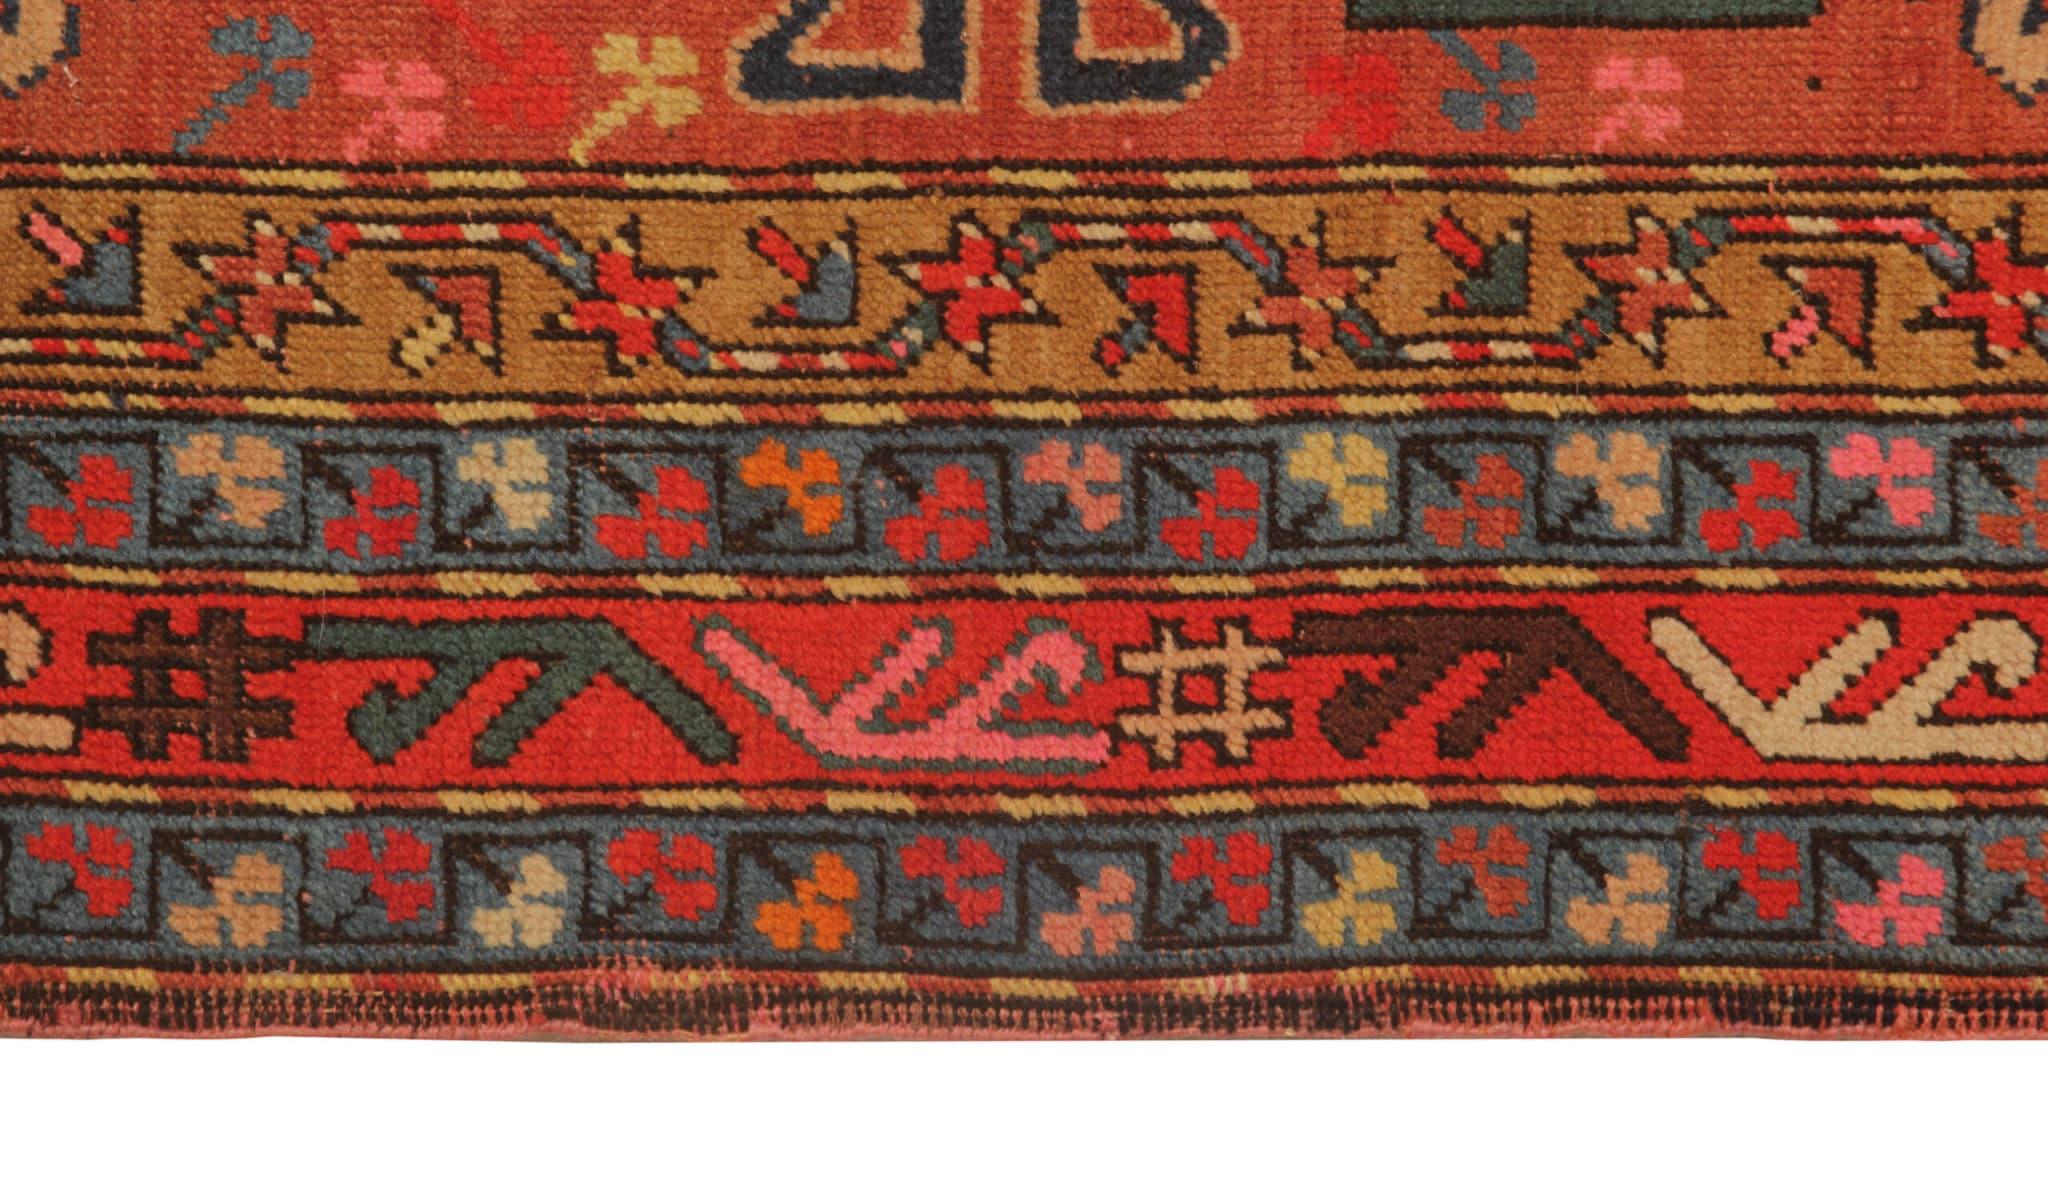 Versetzen Sie sich mit unserem seltenen antiken roten Teppich, einem wahren Meisterwerk aus der Region Schirwan im Kaukasus, in die reiche Geschichte zurück. Dieses orientalische Wunderwerk wurde in den 1880er Jahren von geschickten Handwerkern